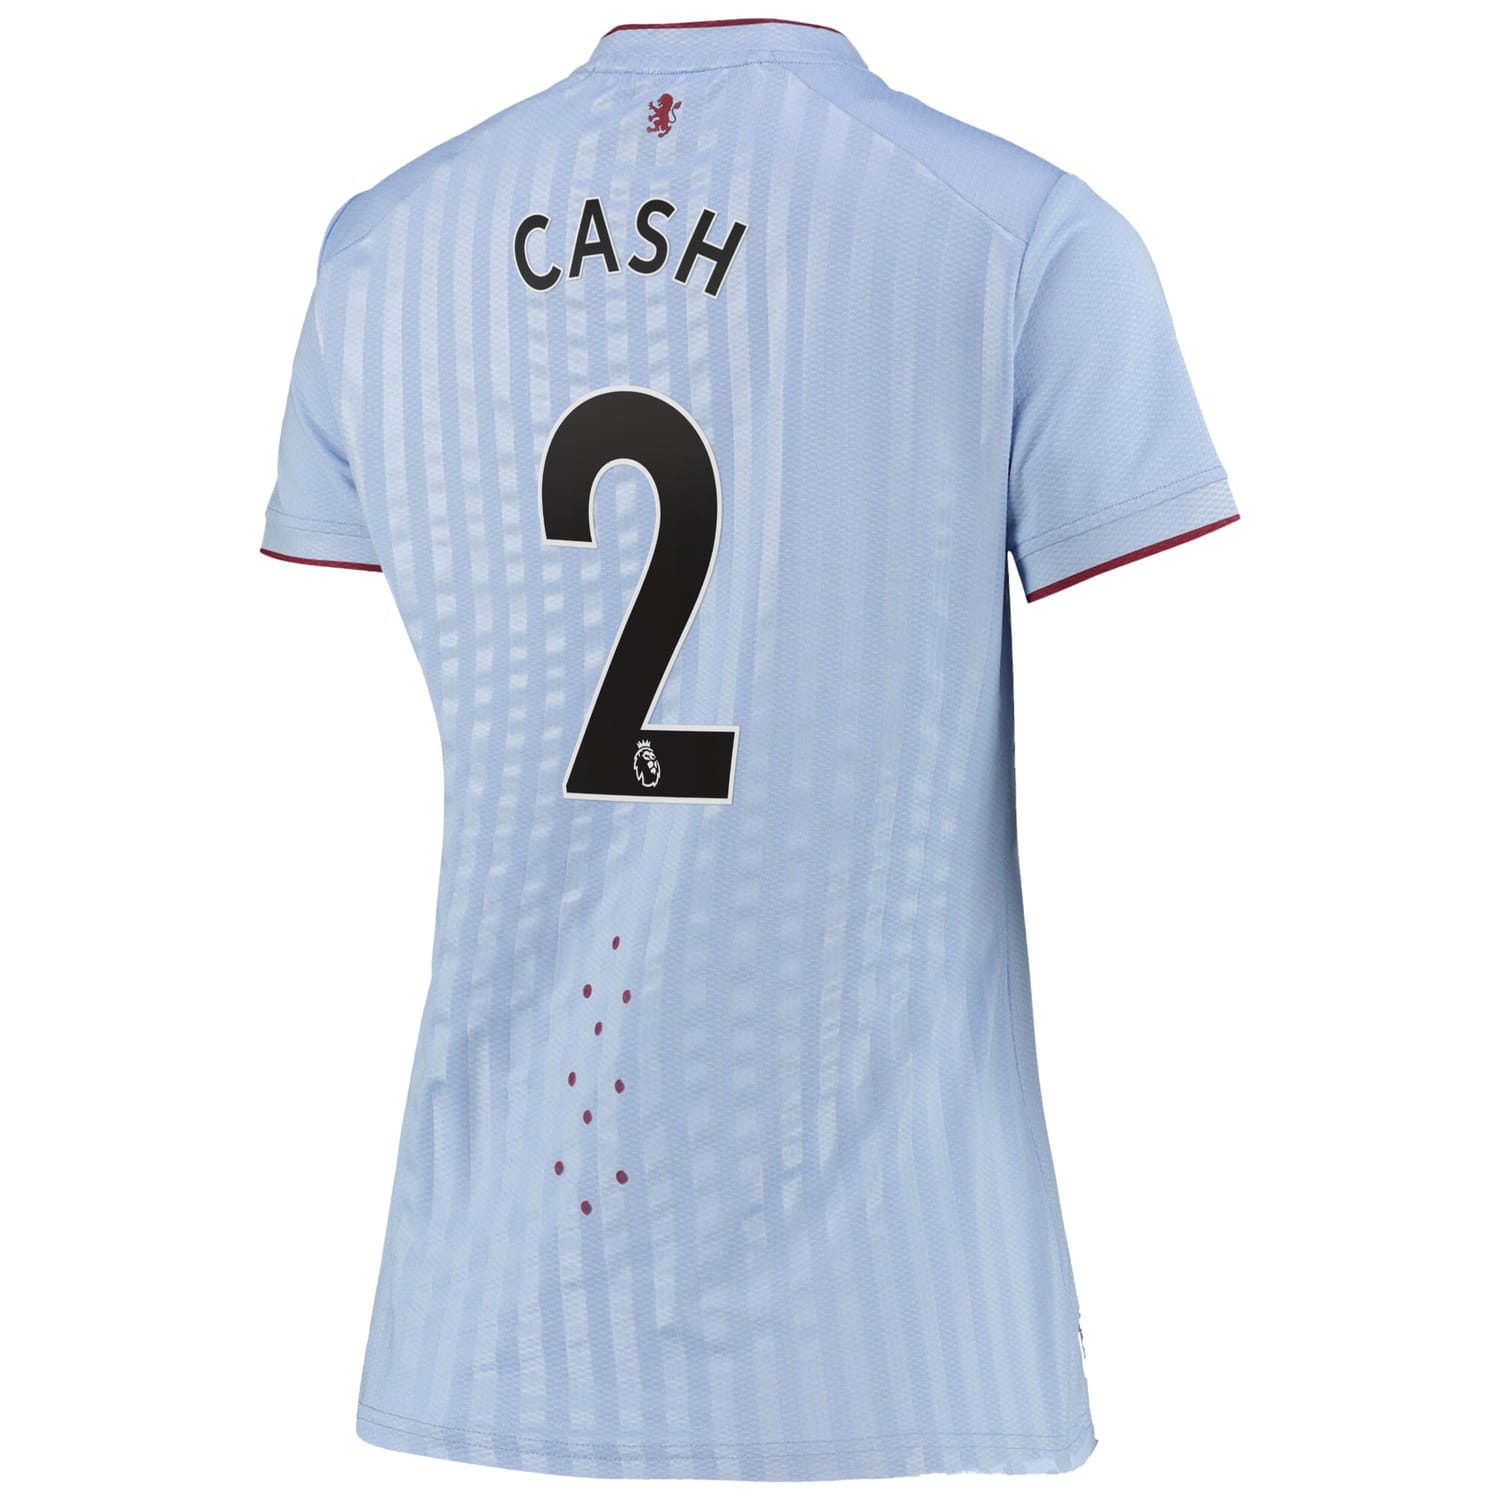 Premier League Ast. Villa Away Pro Jersey Shirt 2022-23 player Matty Cash 2 printing for Women